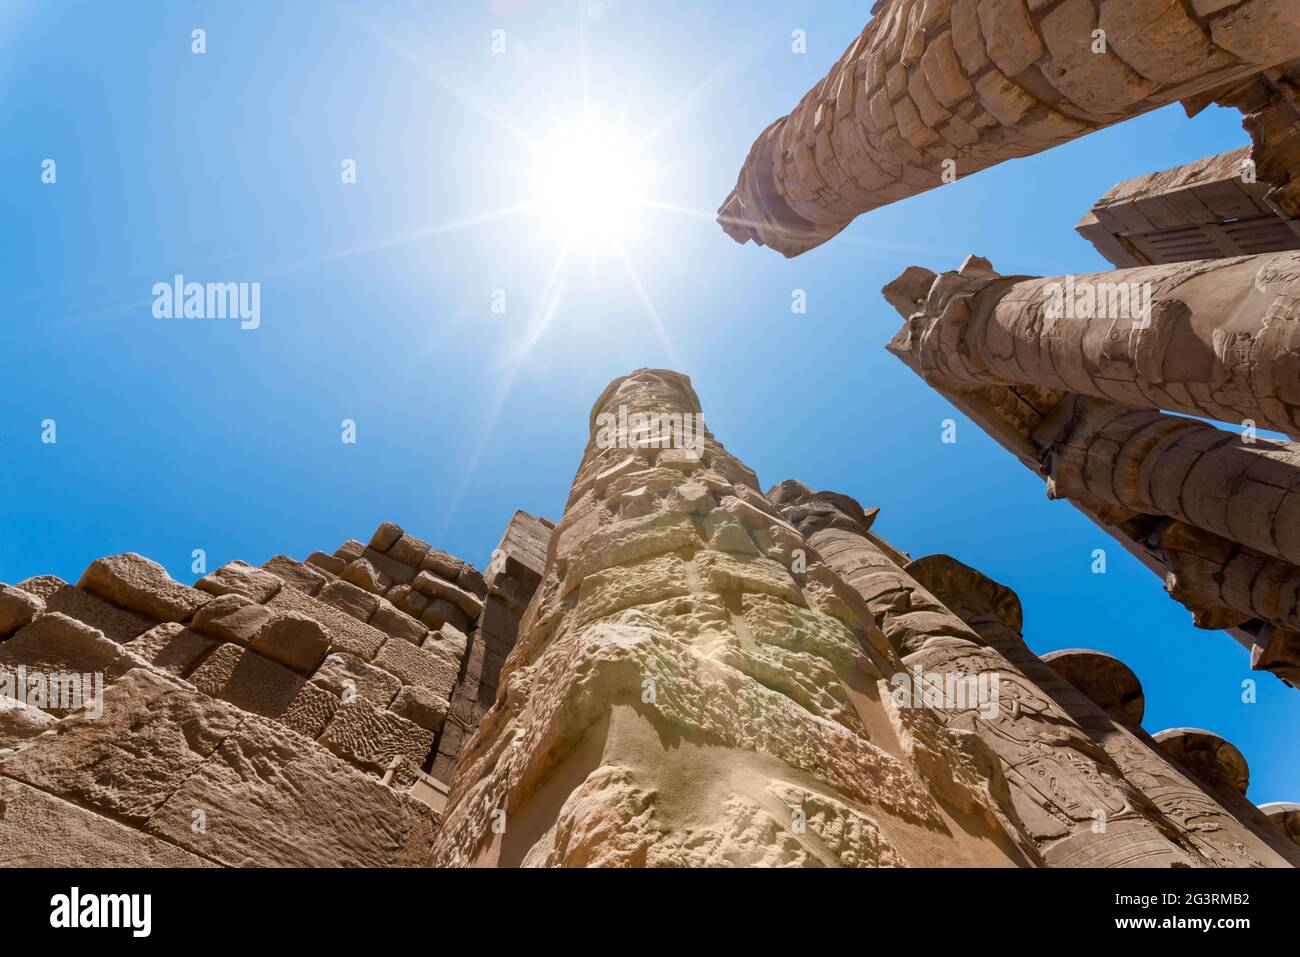 colonnes anciennes dans un temple de karnak à louxor en égypte Banque D'Images